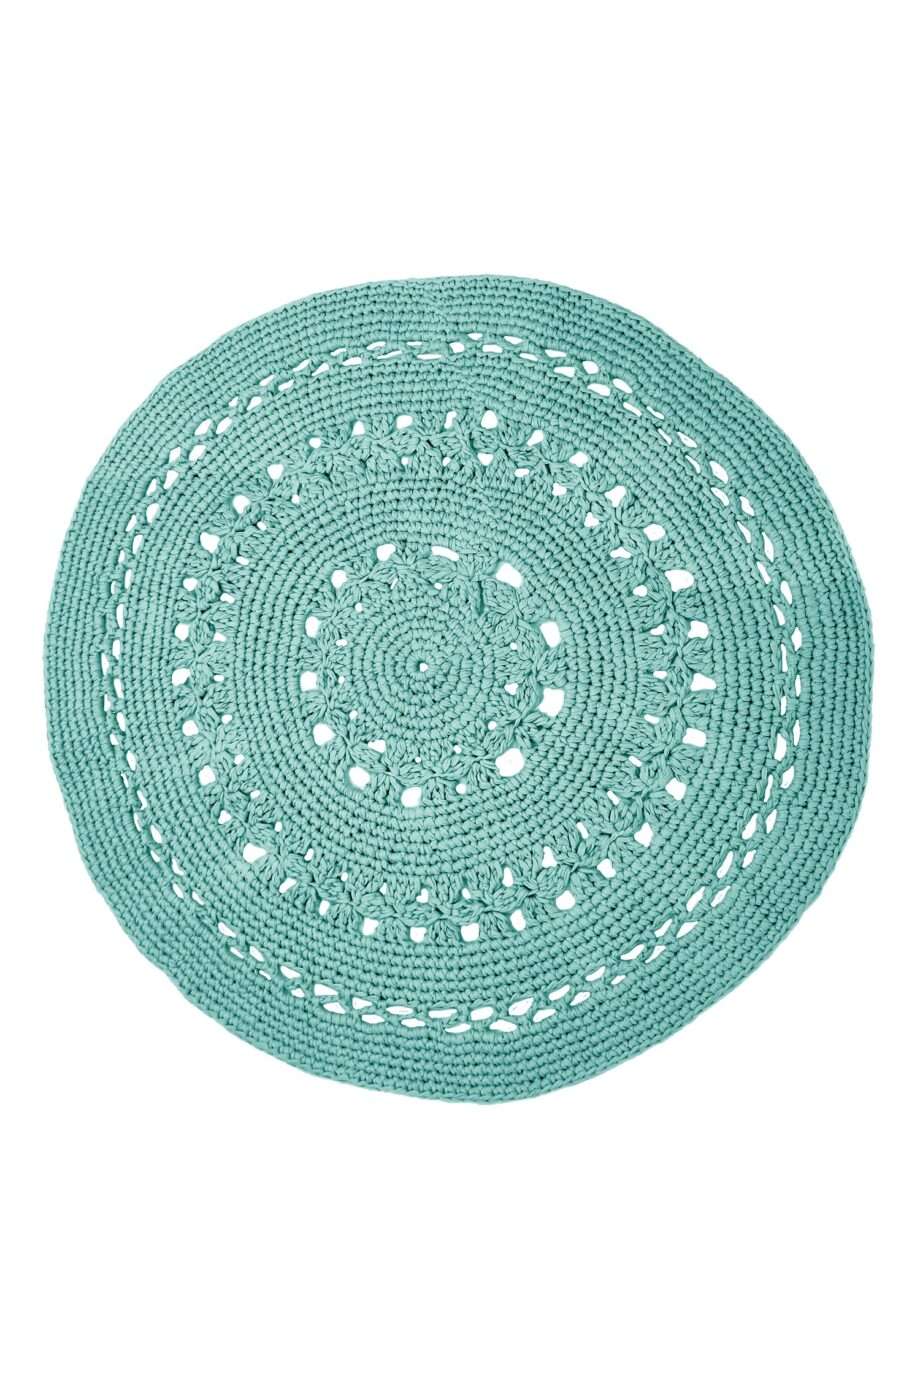 flor sea blue crochet cotton rug large